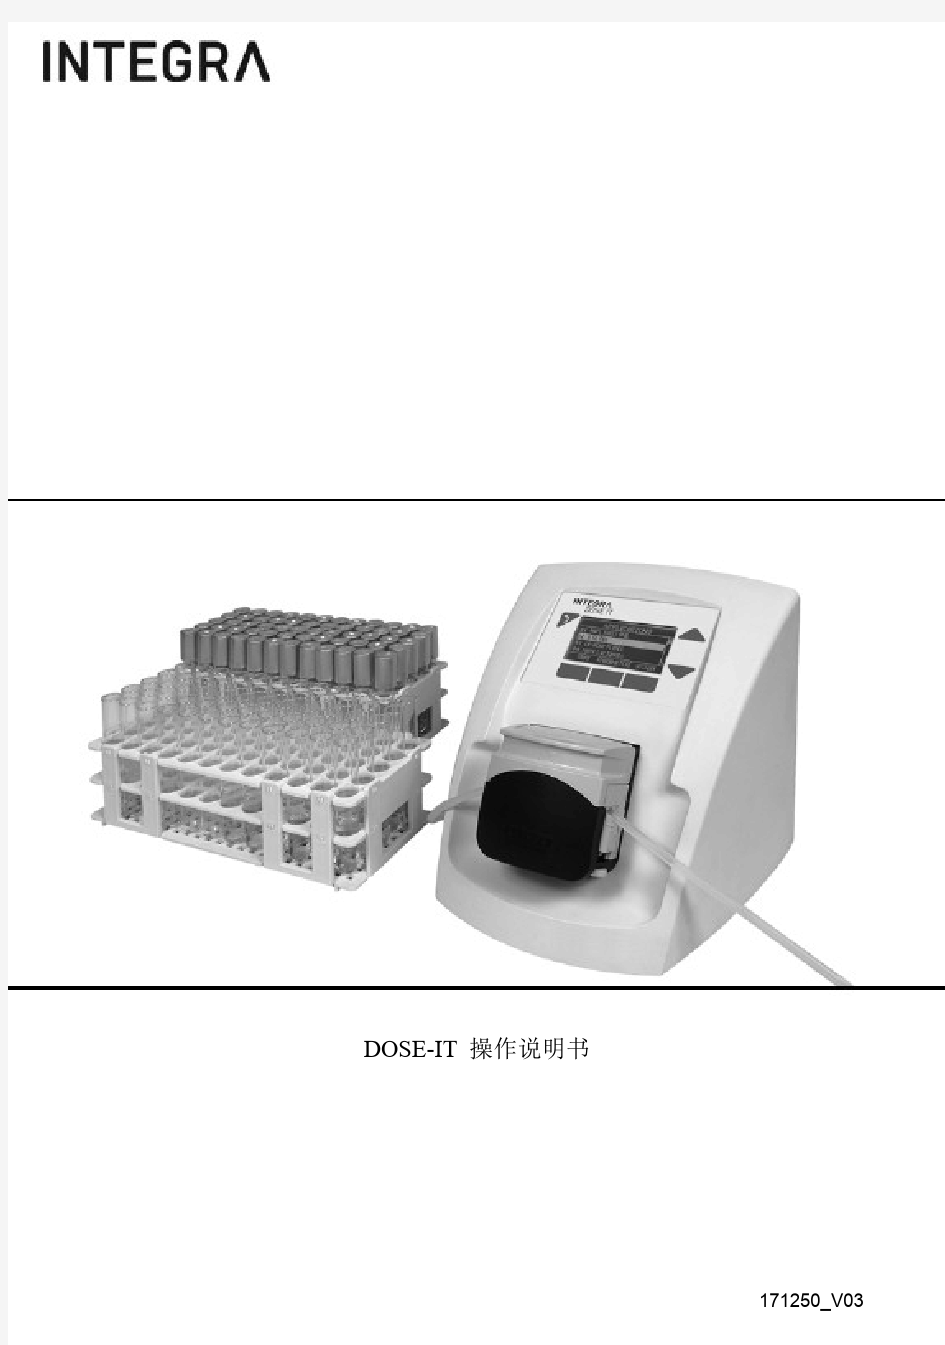 DOSE-IT P910型泵  新版使用说明 中文